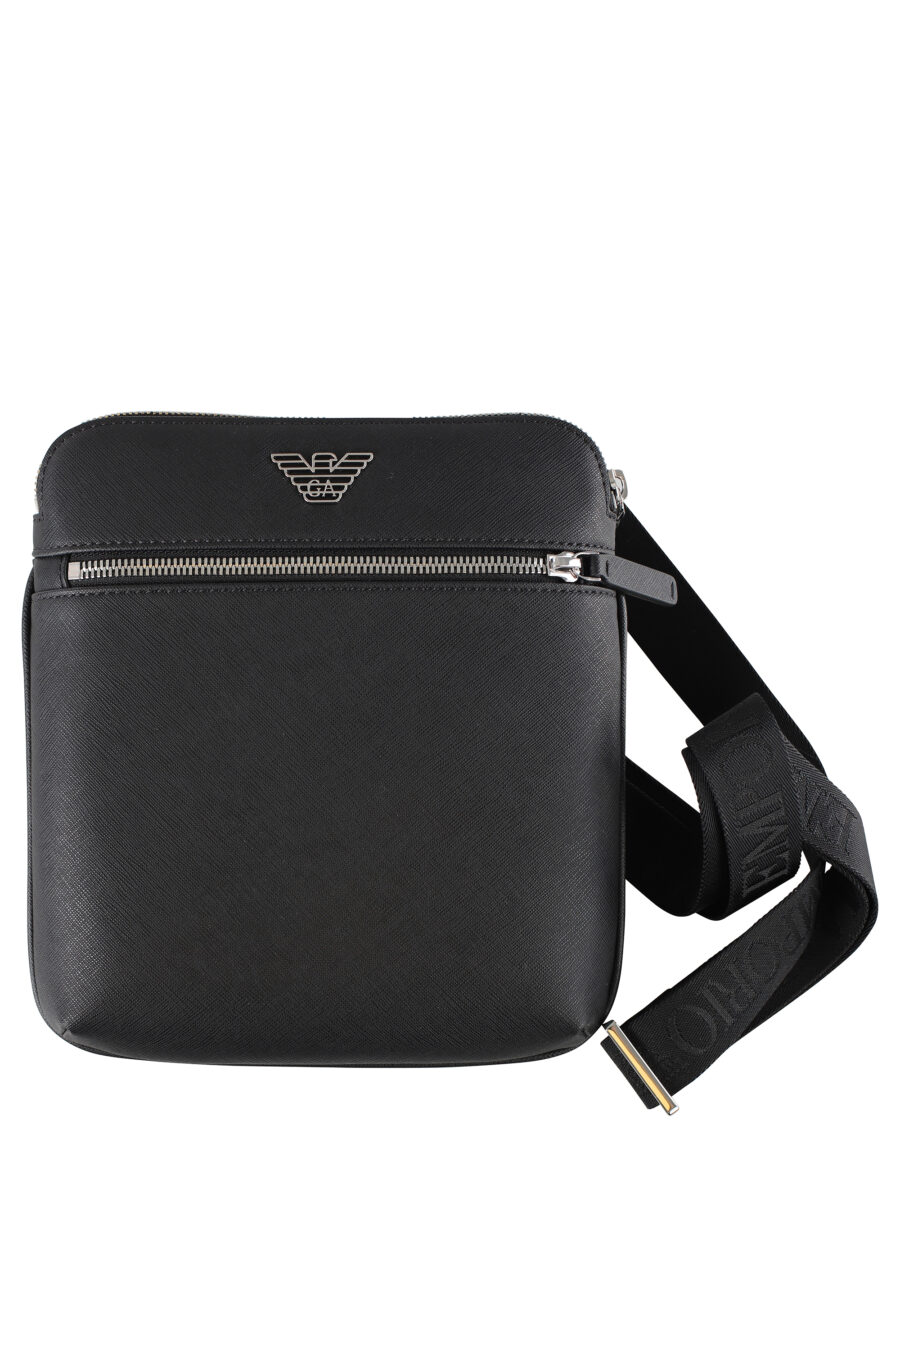 Black shoulder bag with eagle logo - IMG 5279